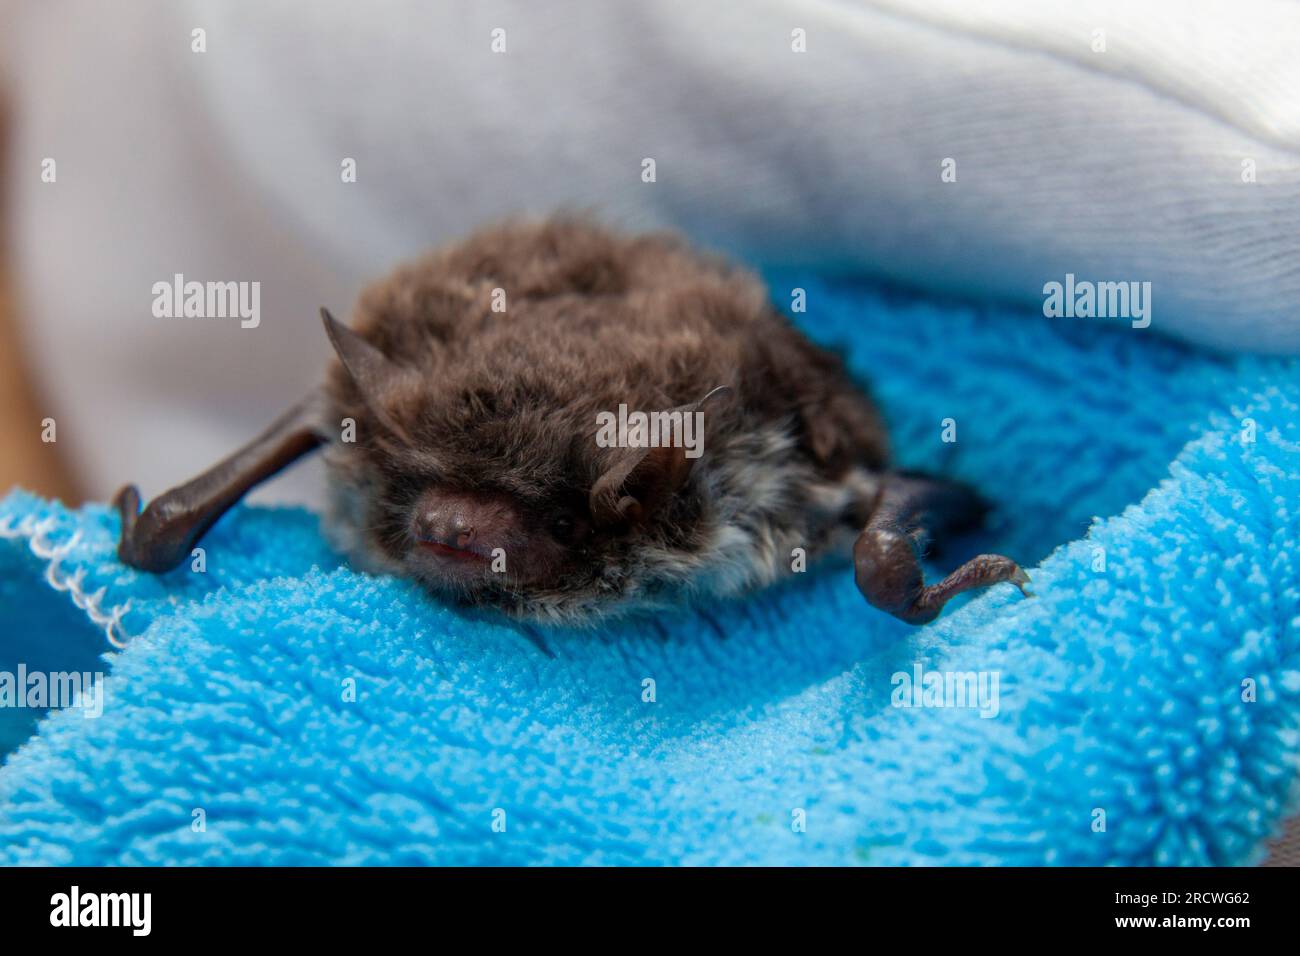 Water bat (Myotis daubentonii), caring for injured animals Stock Photo